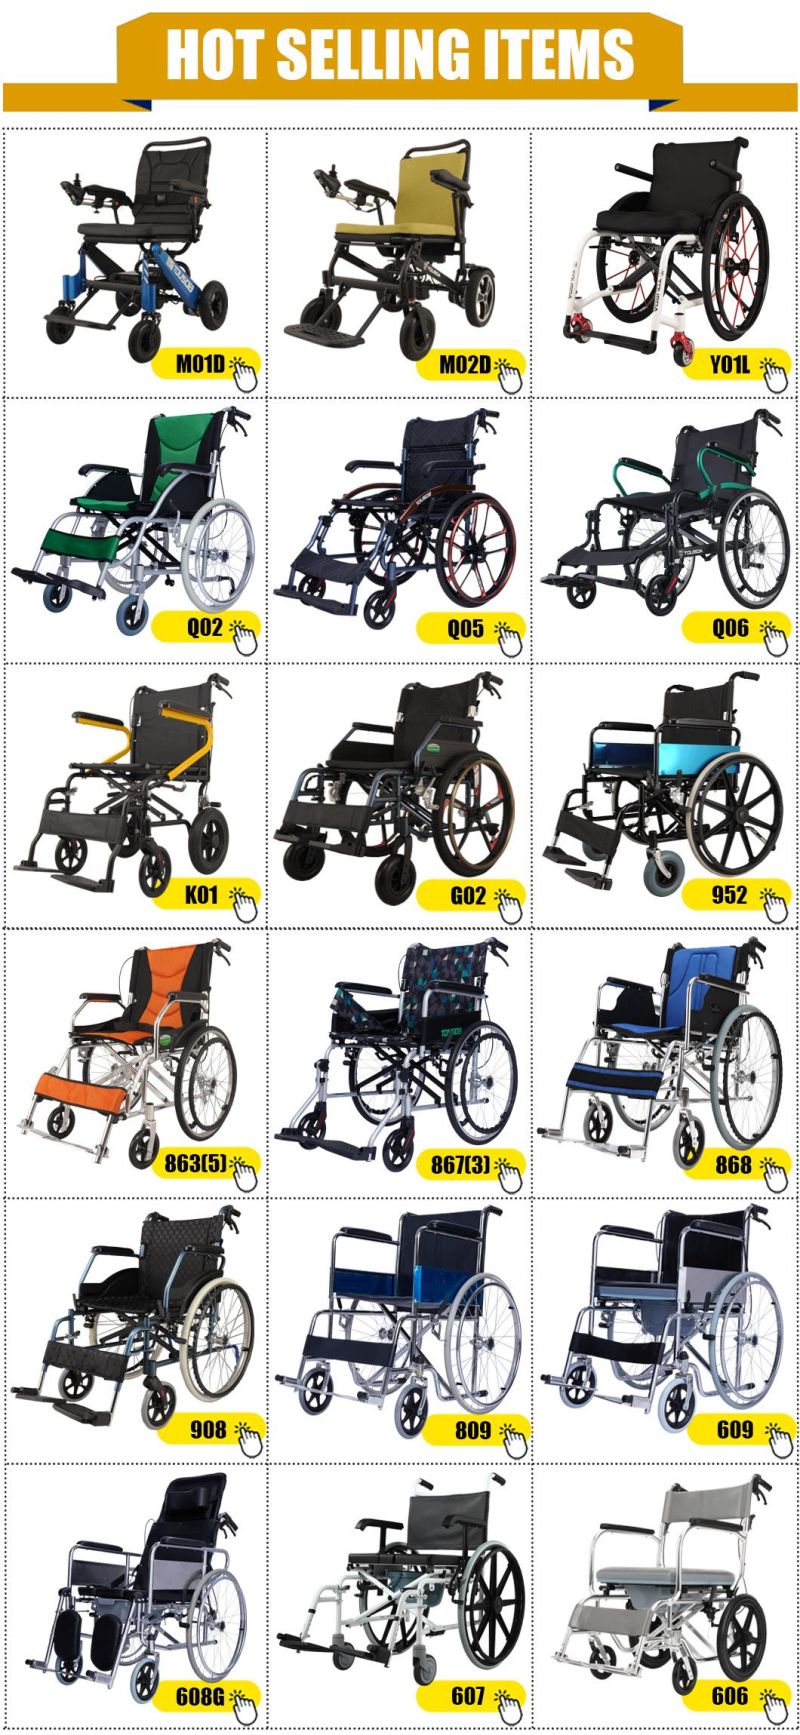 Lightweight Electric Aluminum Frame Folding Sport Disabled Power Wheelchair